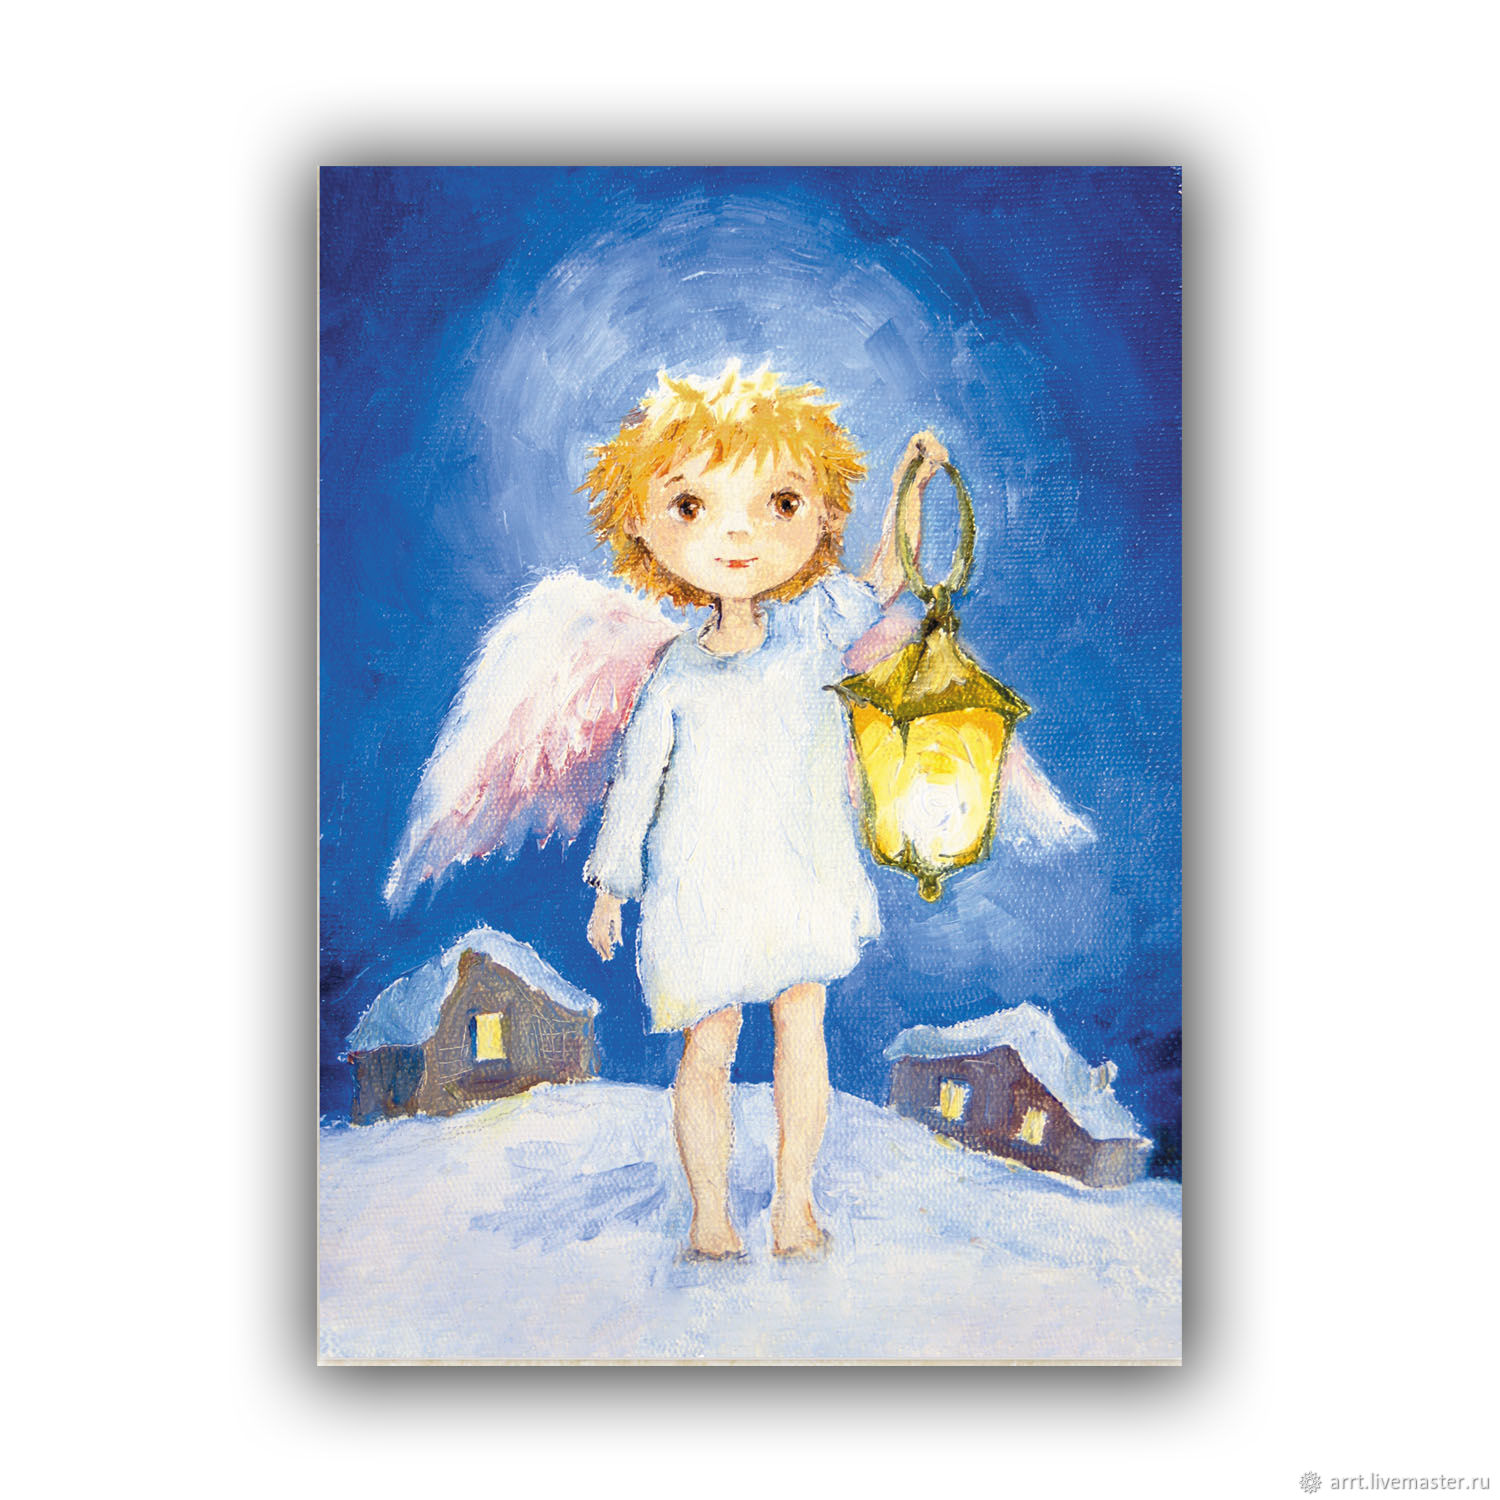 LIFESTYLE ДЕТАЛИ > Открытки Ангелы ручной работы (Аня Миртова) купить в интернет-магазине